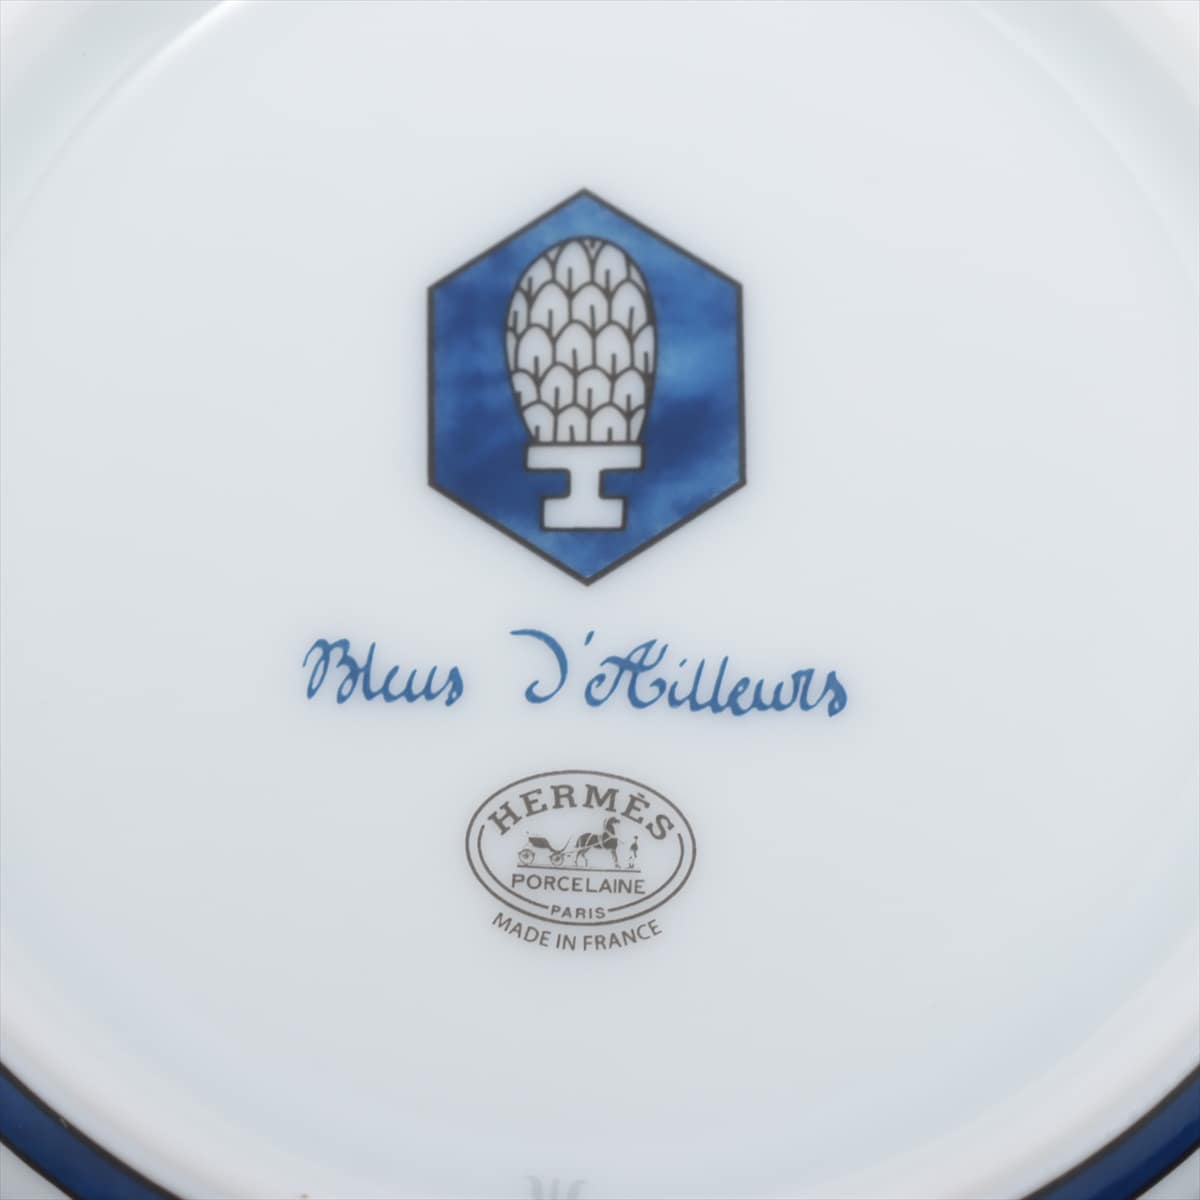 エルメス Bleus d’Ailleurs 大皿 陶器 ブルー